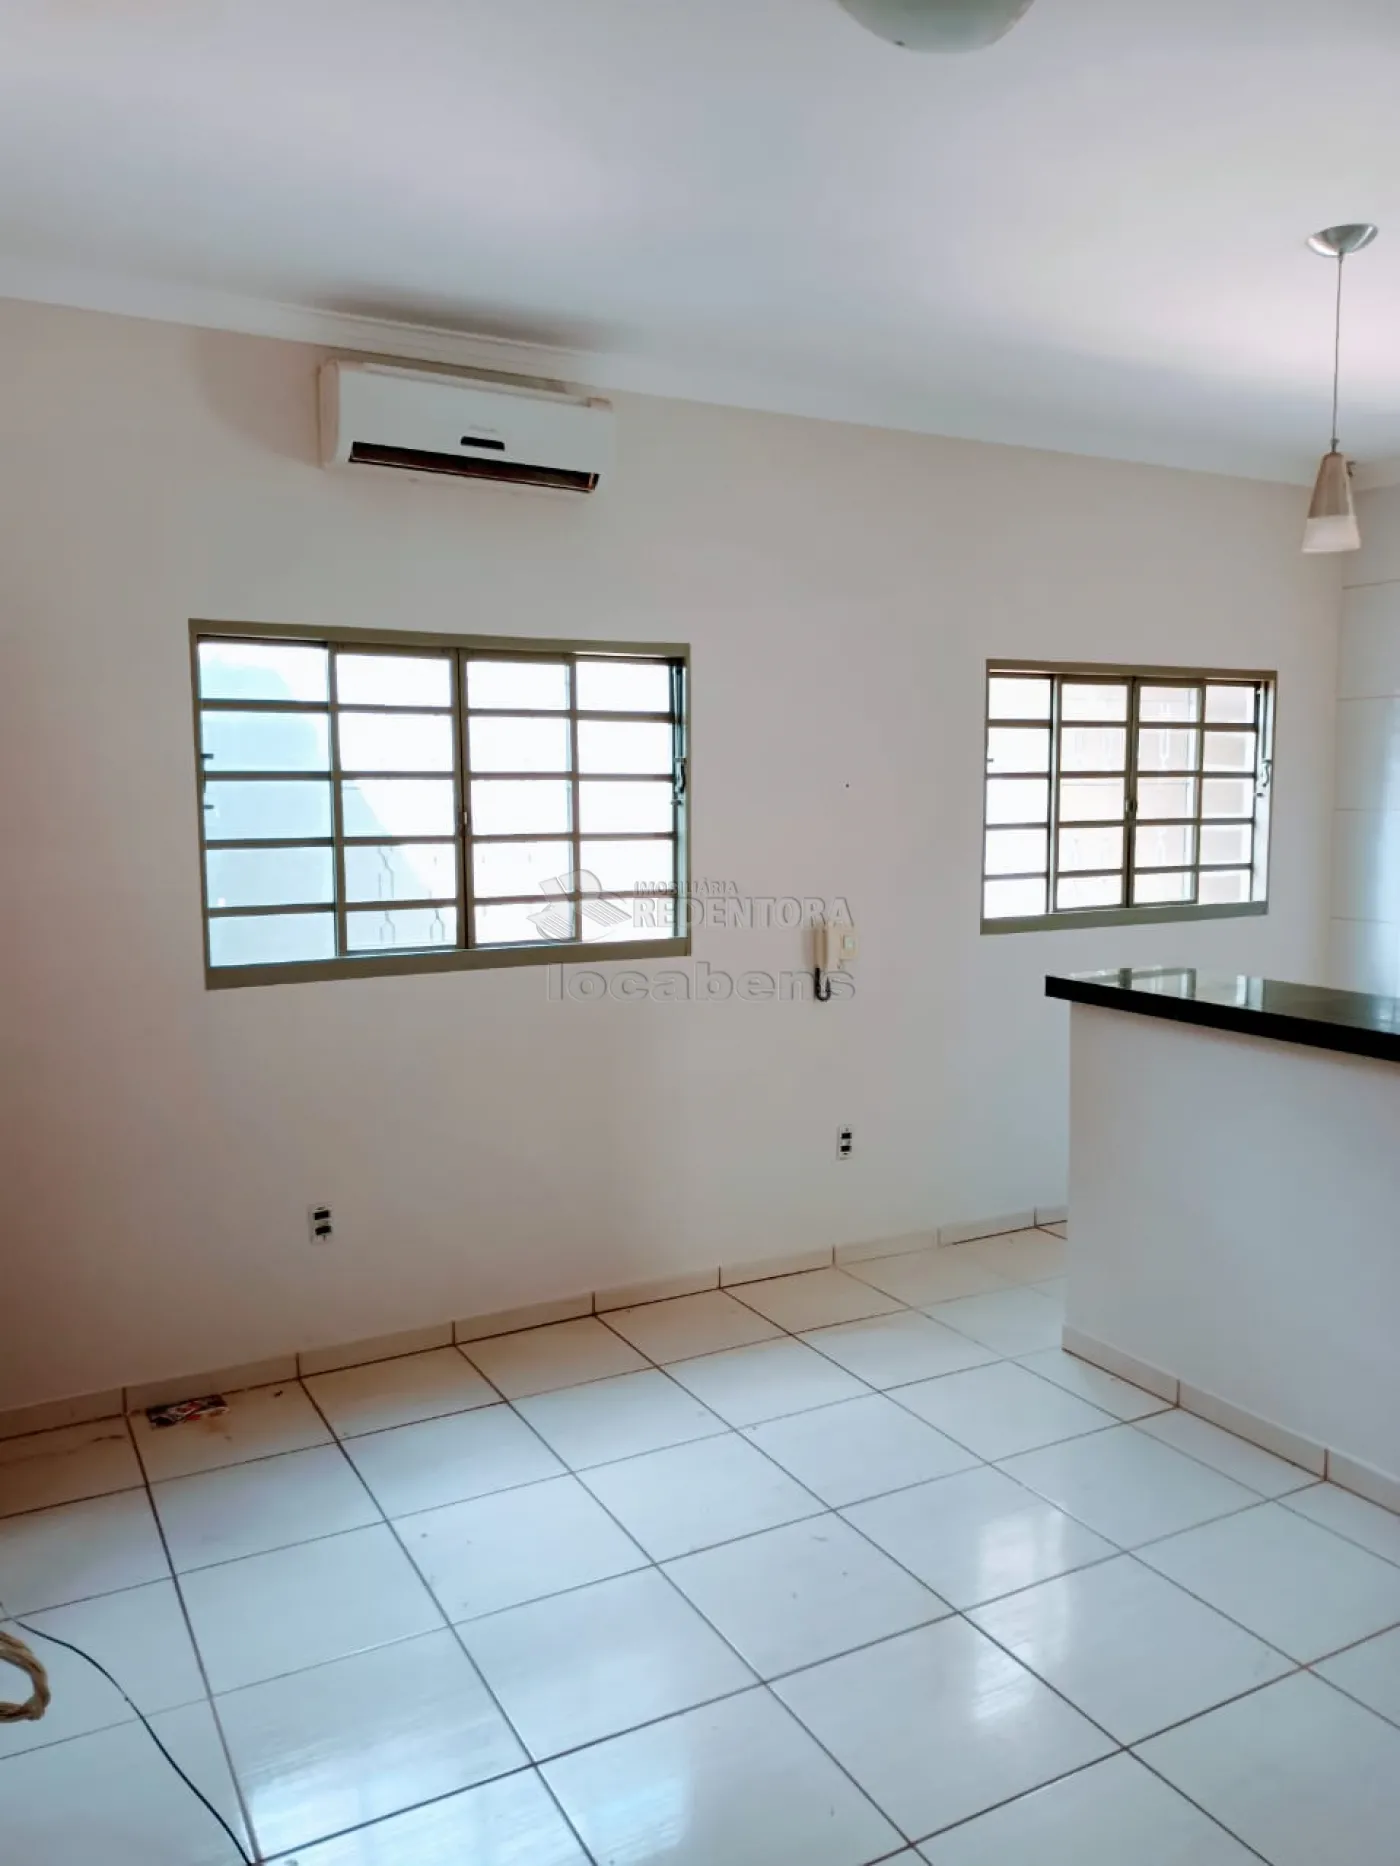 Comprar Casa / Padrão em São José do Rio Preto R$ 315.000,00 - Foto 11